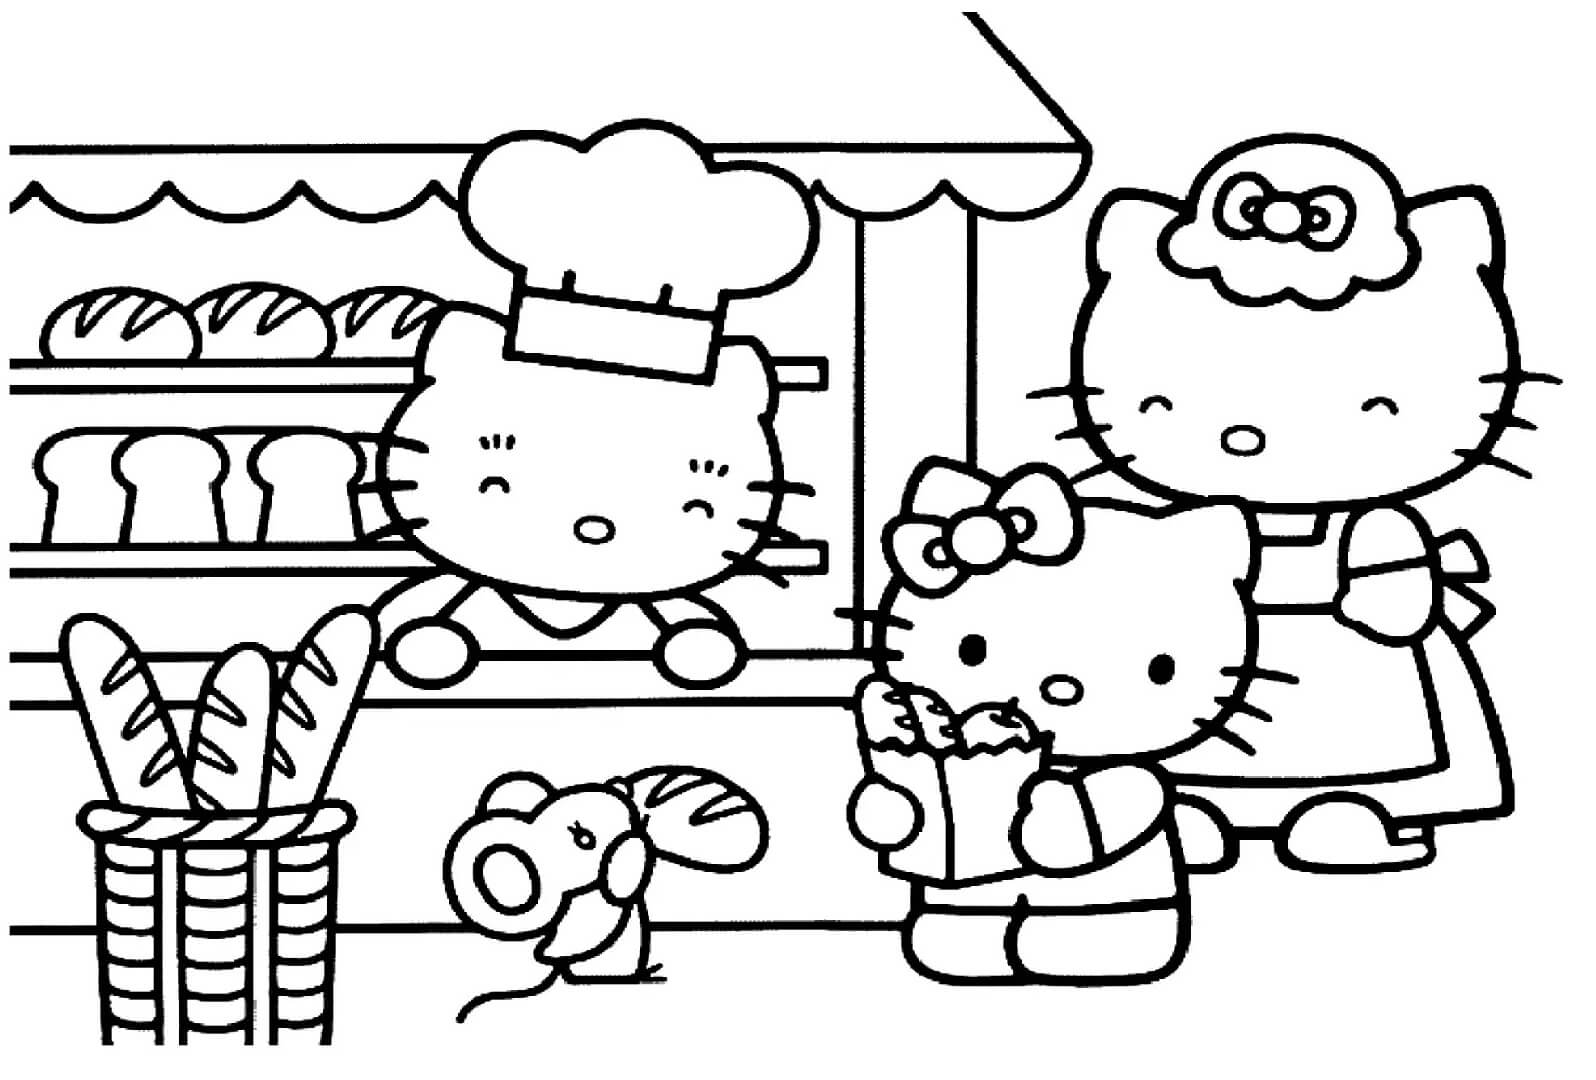 La Familia de Hello Kitty en la Panadería